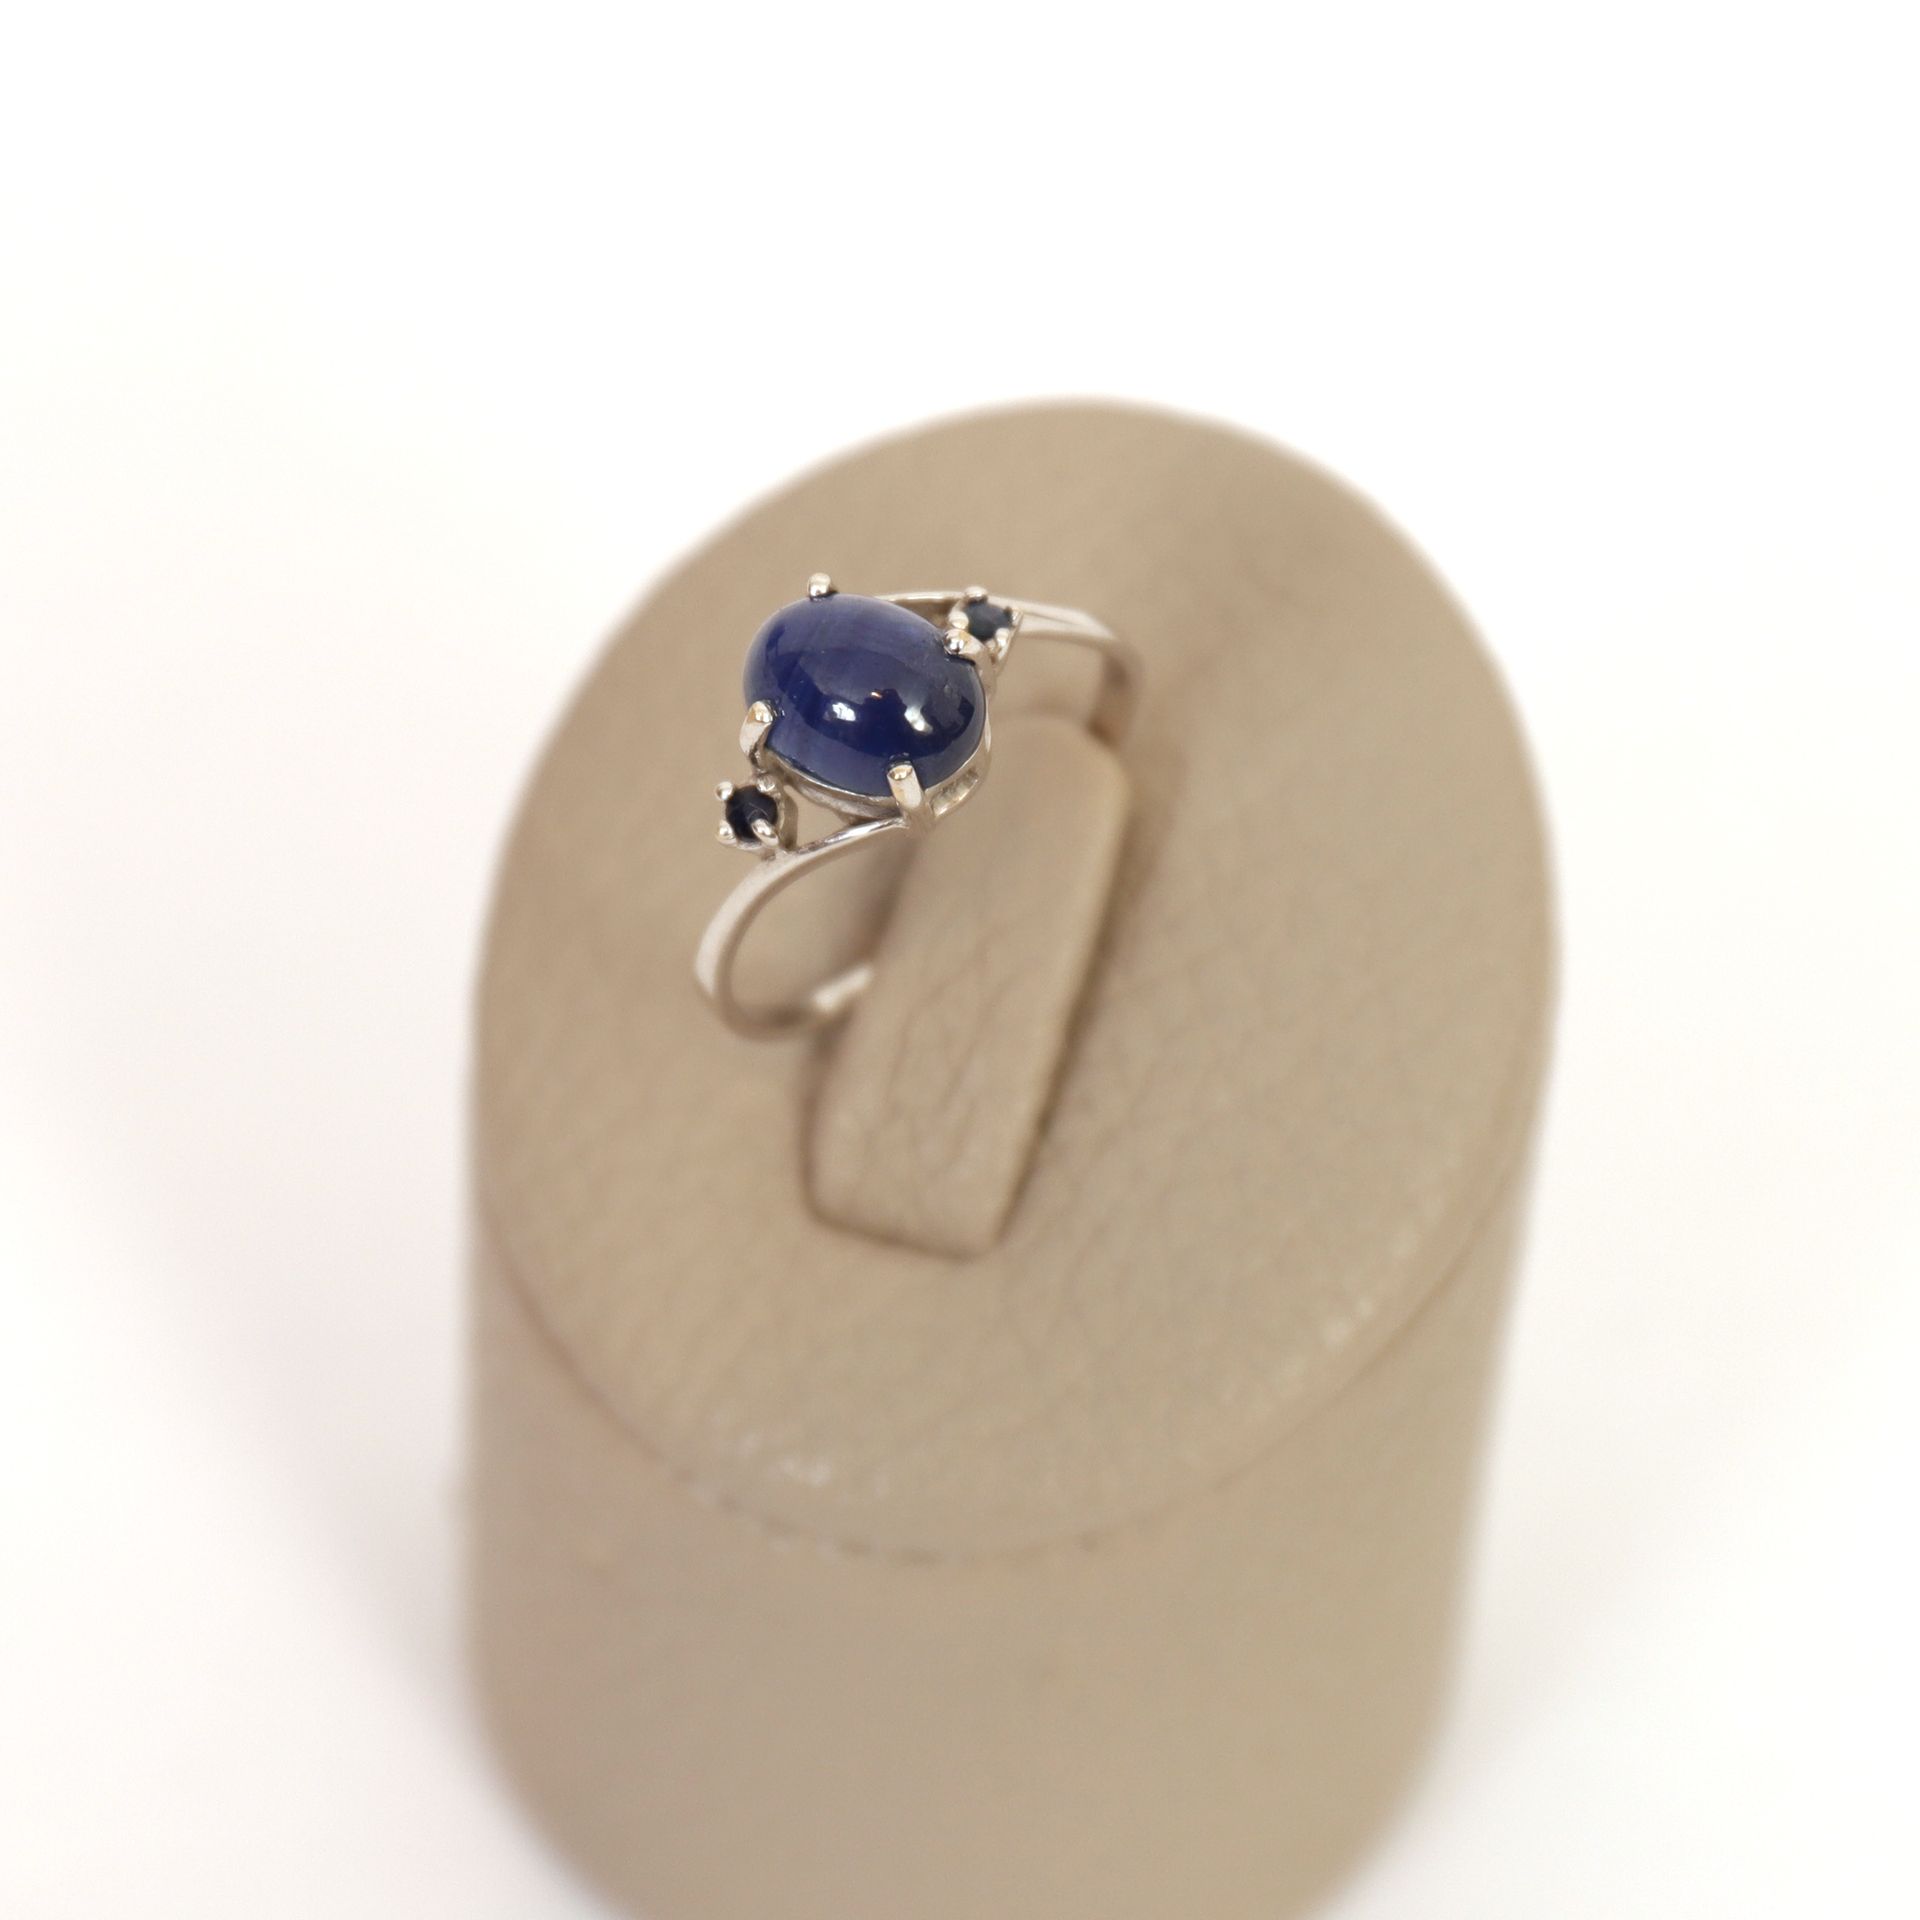 Null 白金戒指配三颗蓝宝石

戒指上有一颗凸圆形蓝宝石镶嵌在四个爪子上，两个明亮式切割蓝宝石也镶嵌在四个爪子上。

20世纪时期

重量：2克